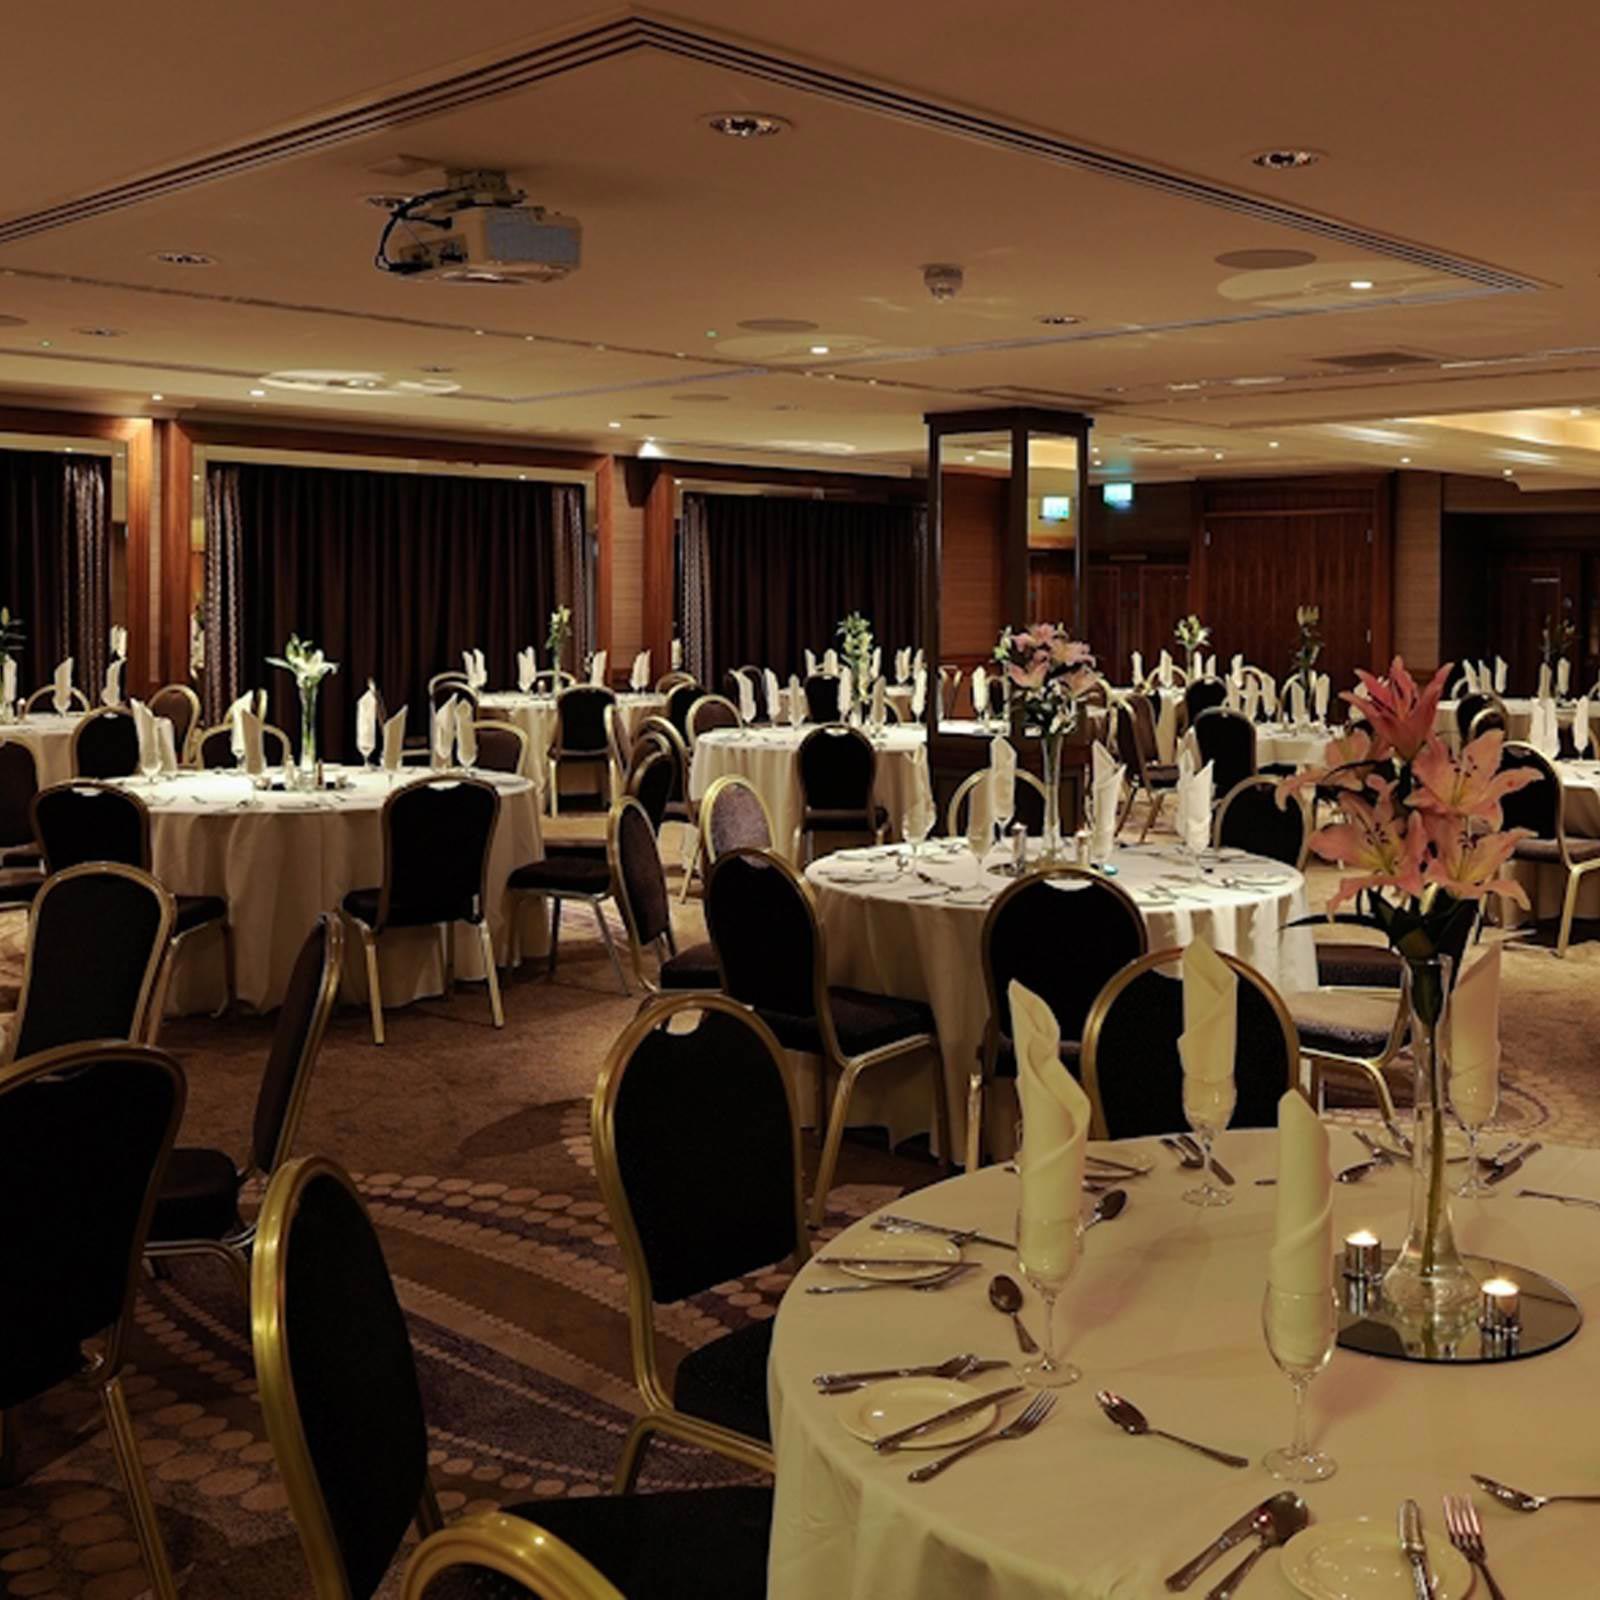 Deramore Banquet event space in Belfast